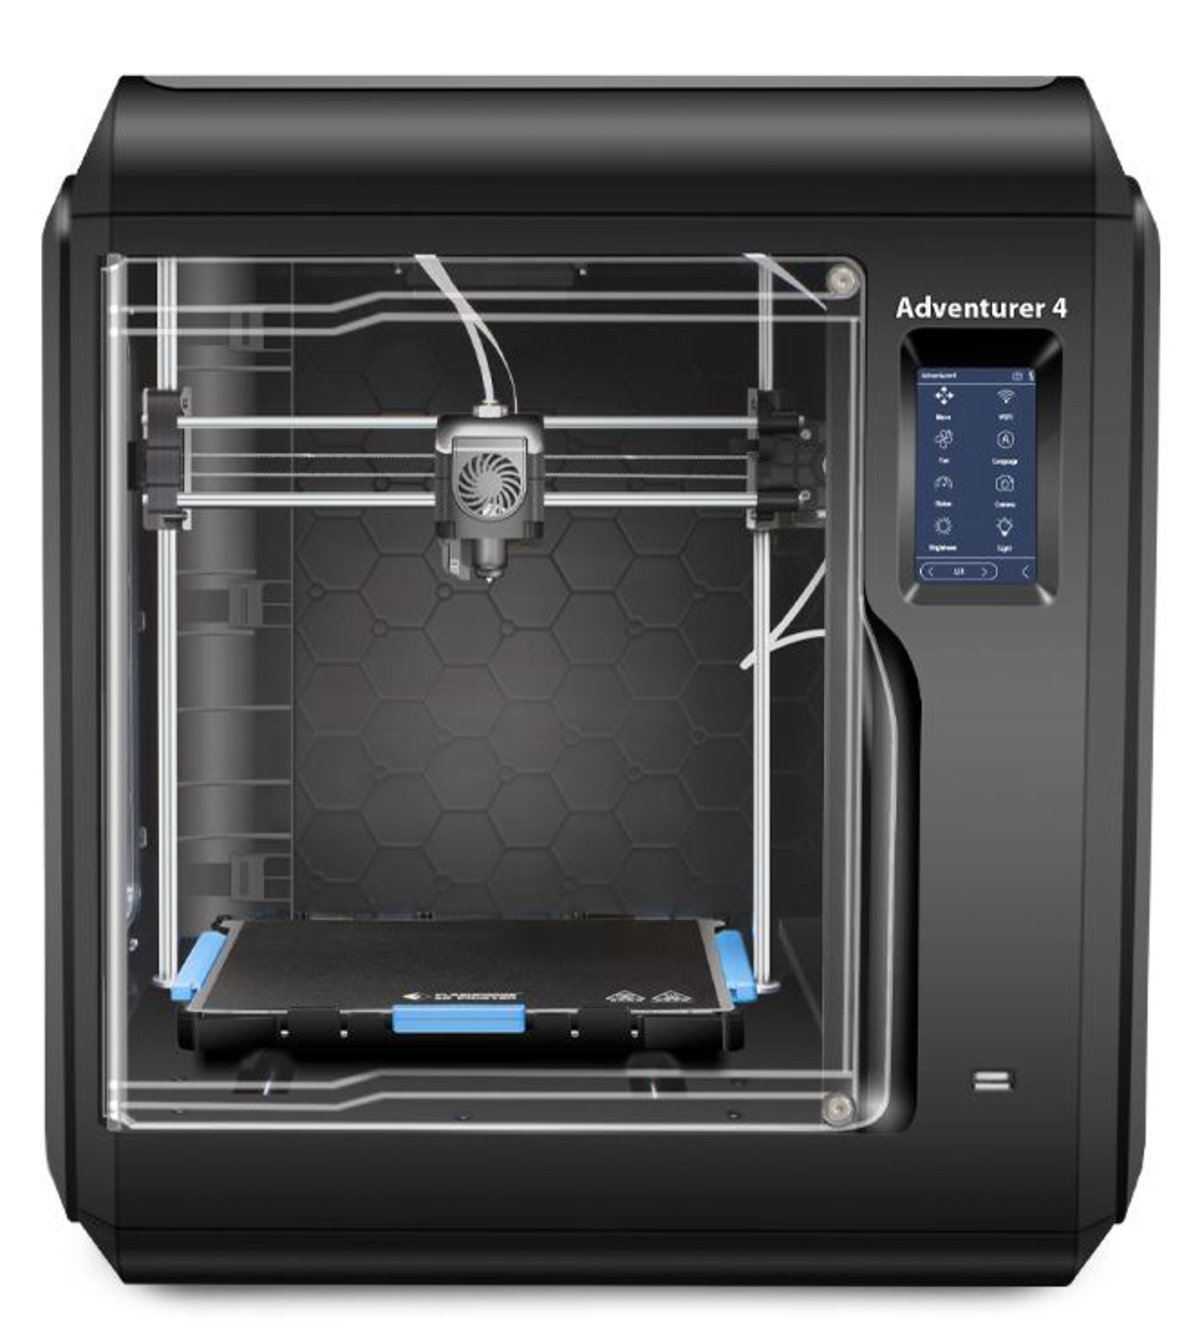 FLASCHFORGE 3D Printer 4 - Adventurer FDM Drucker 3D